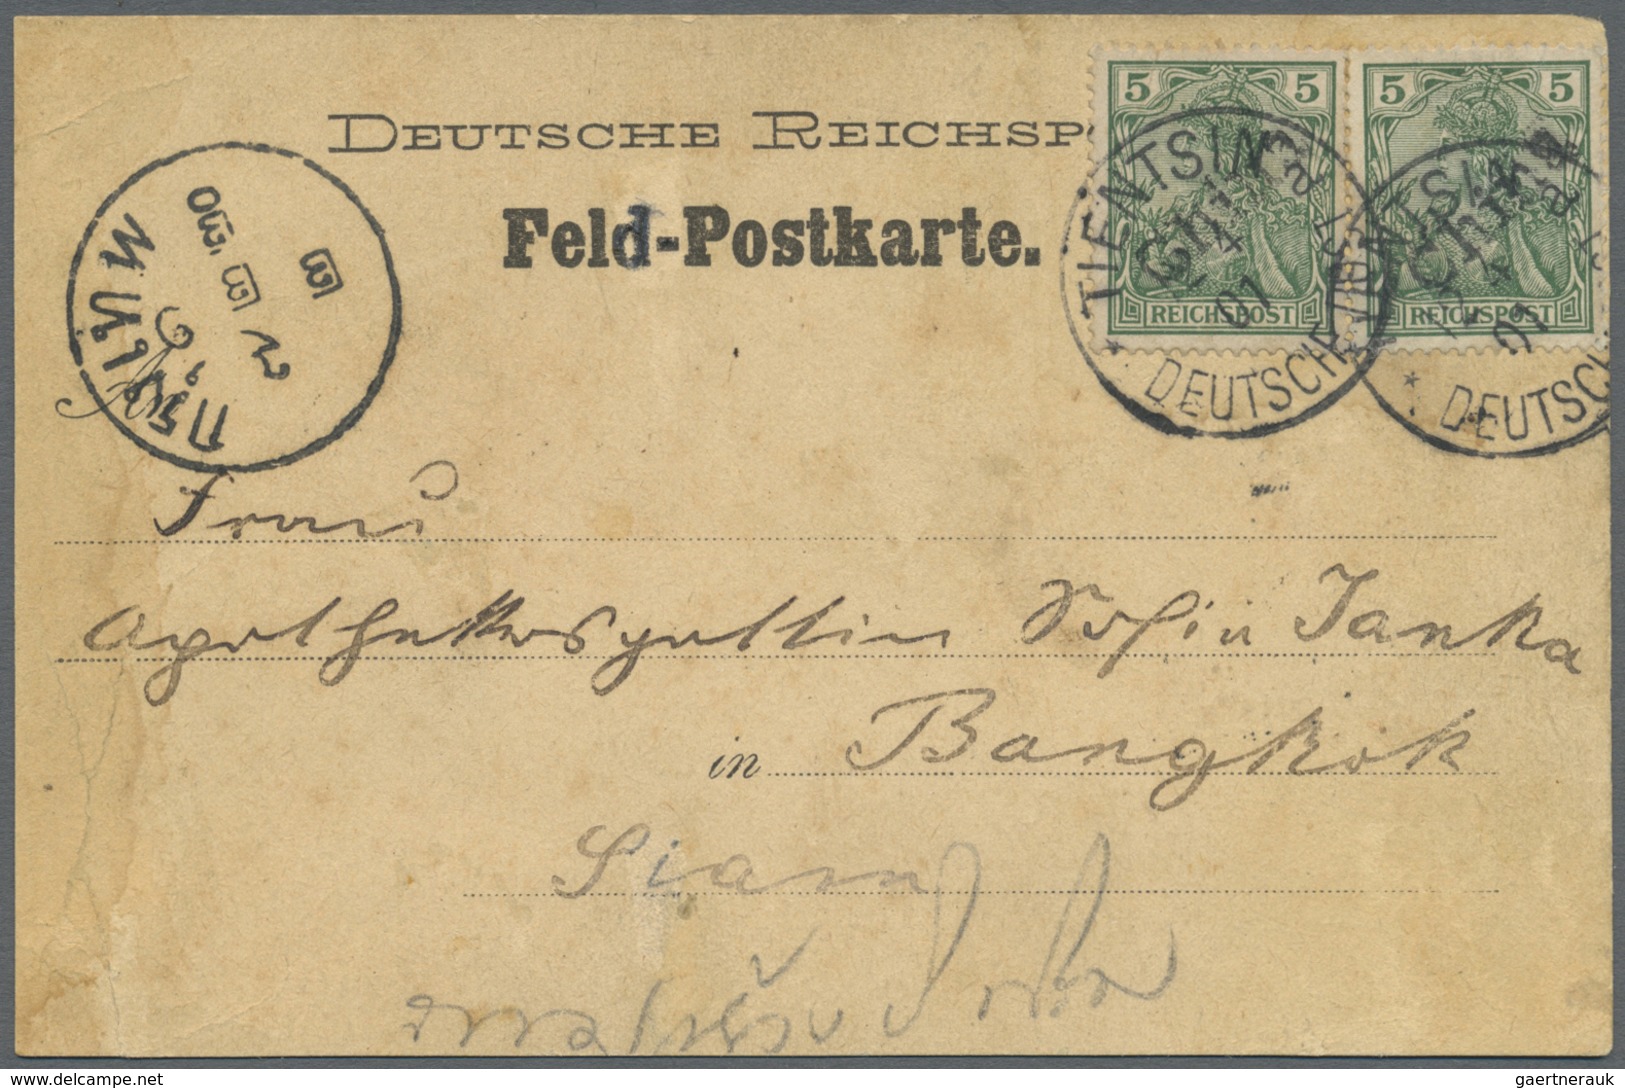 Deutsche Post In China: 1901, Germania 5 Pf Mit Handstempelaufdruck, Gebraucht Mit Einkreisstempel " - Deutsche Post In China